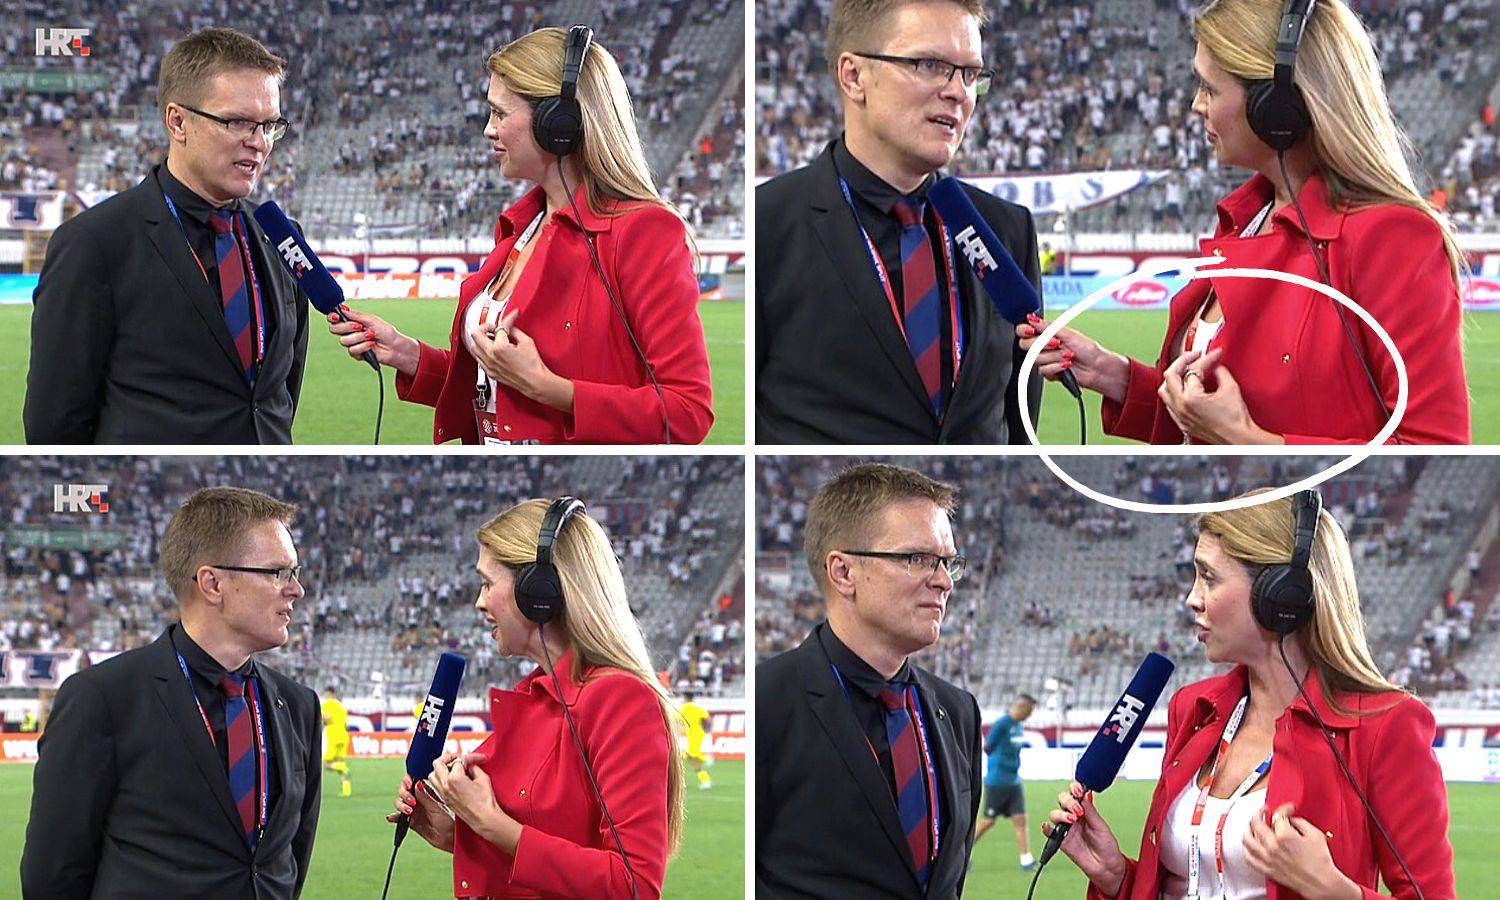 FOTO Što to radi Mirta Šurjak s jaknom dok Dambrauskas plače nakon ispadanja od Villarreala?